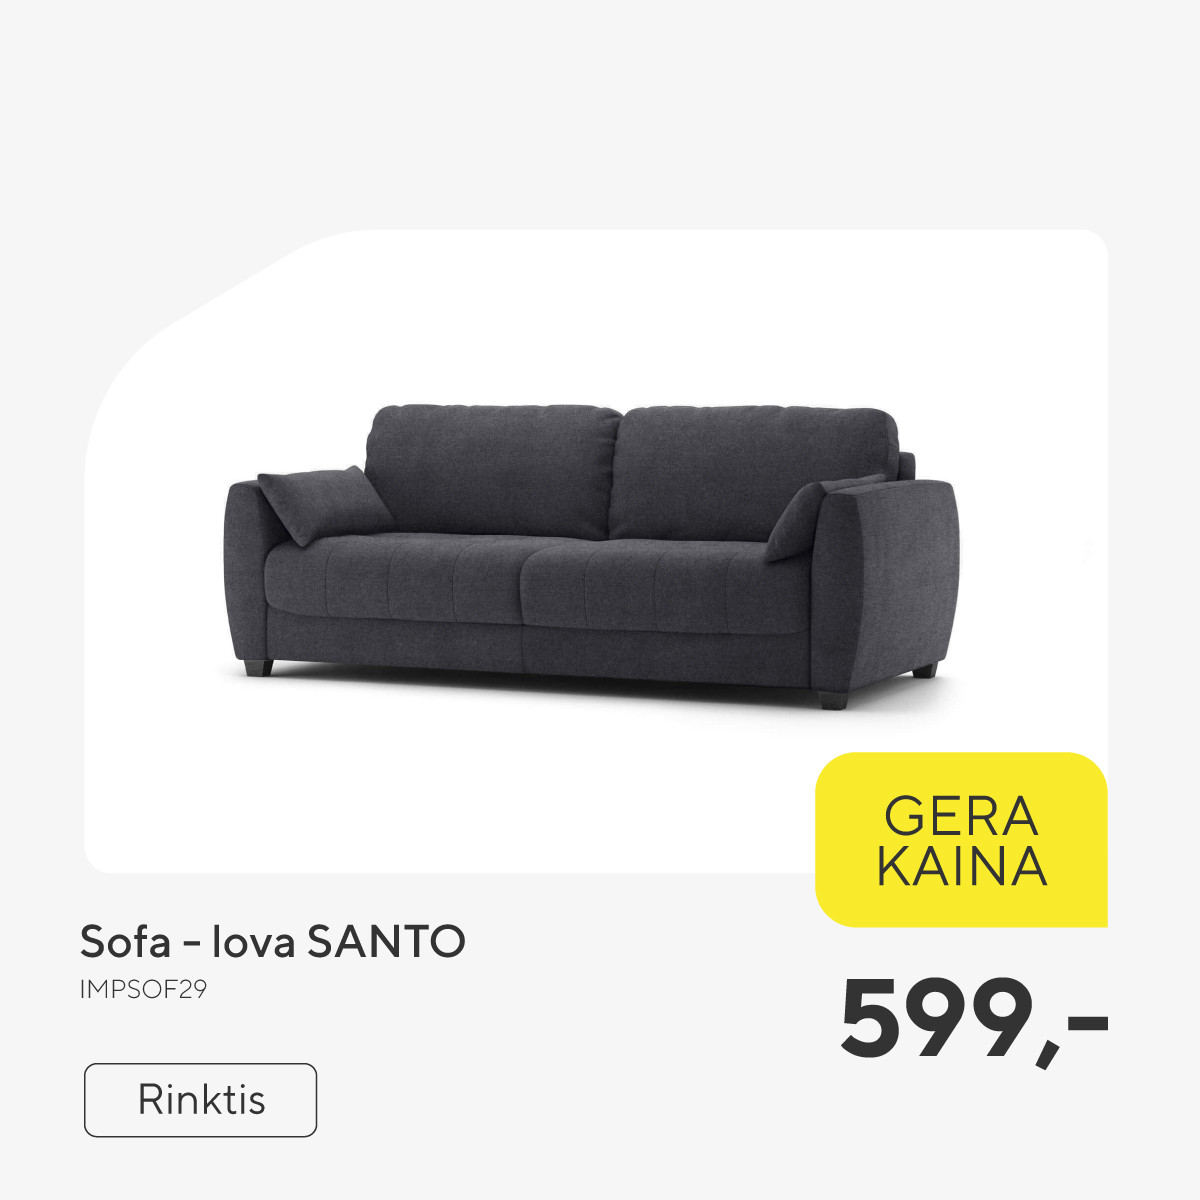 Sofa - lova SANTO